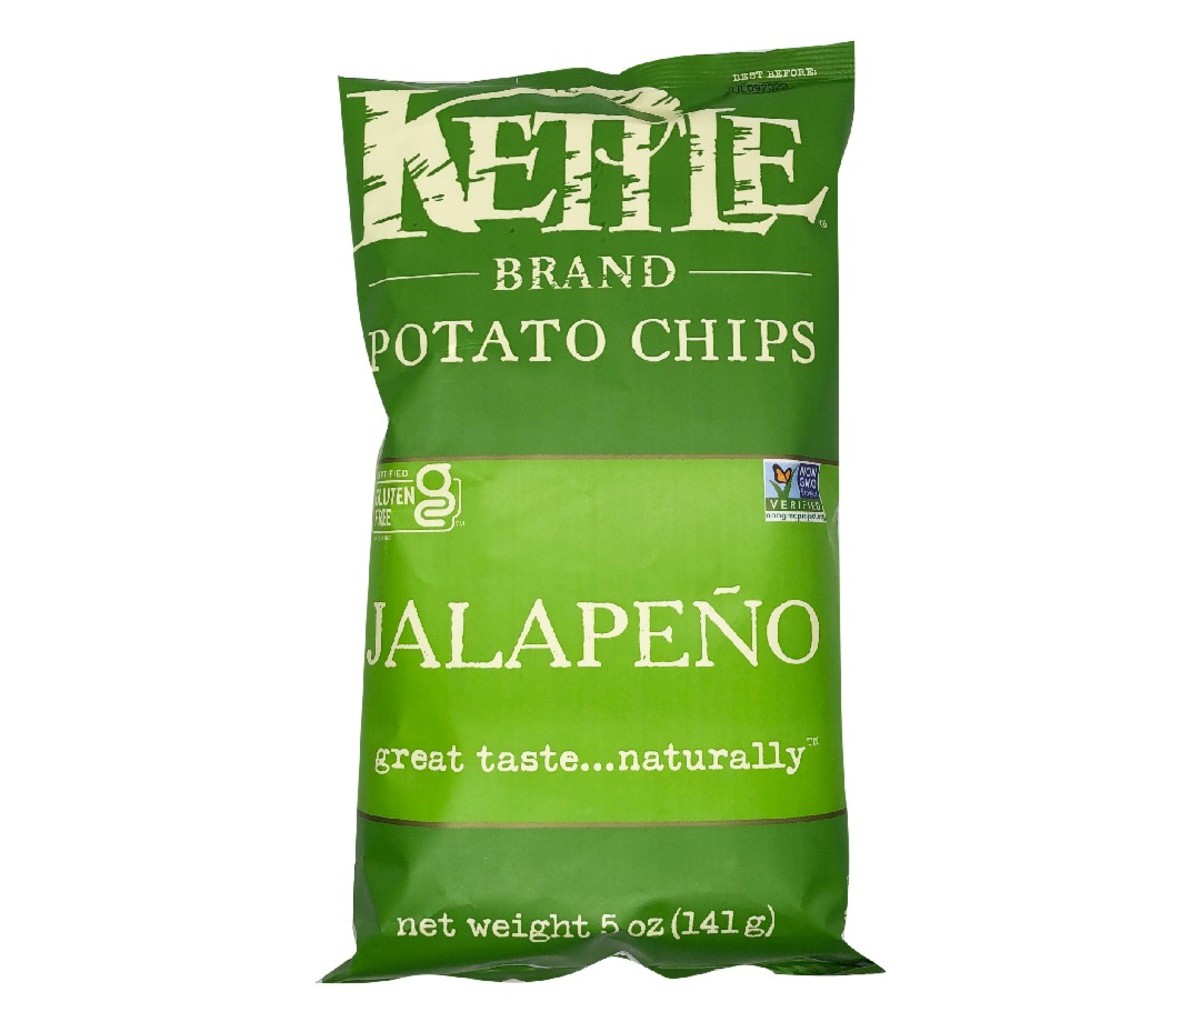 Bag of Kettle Brand Jalapeño Chips